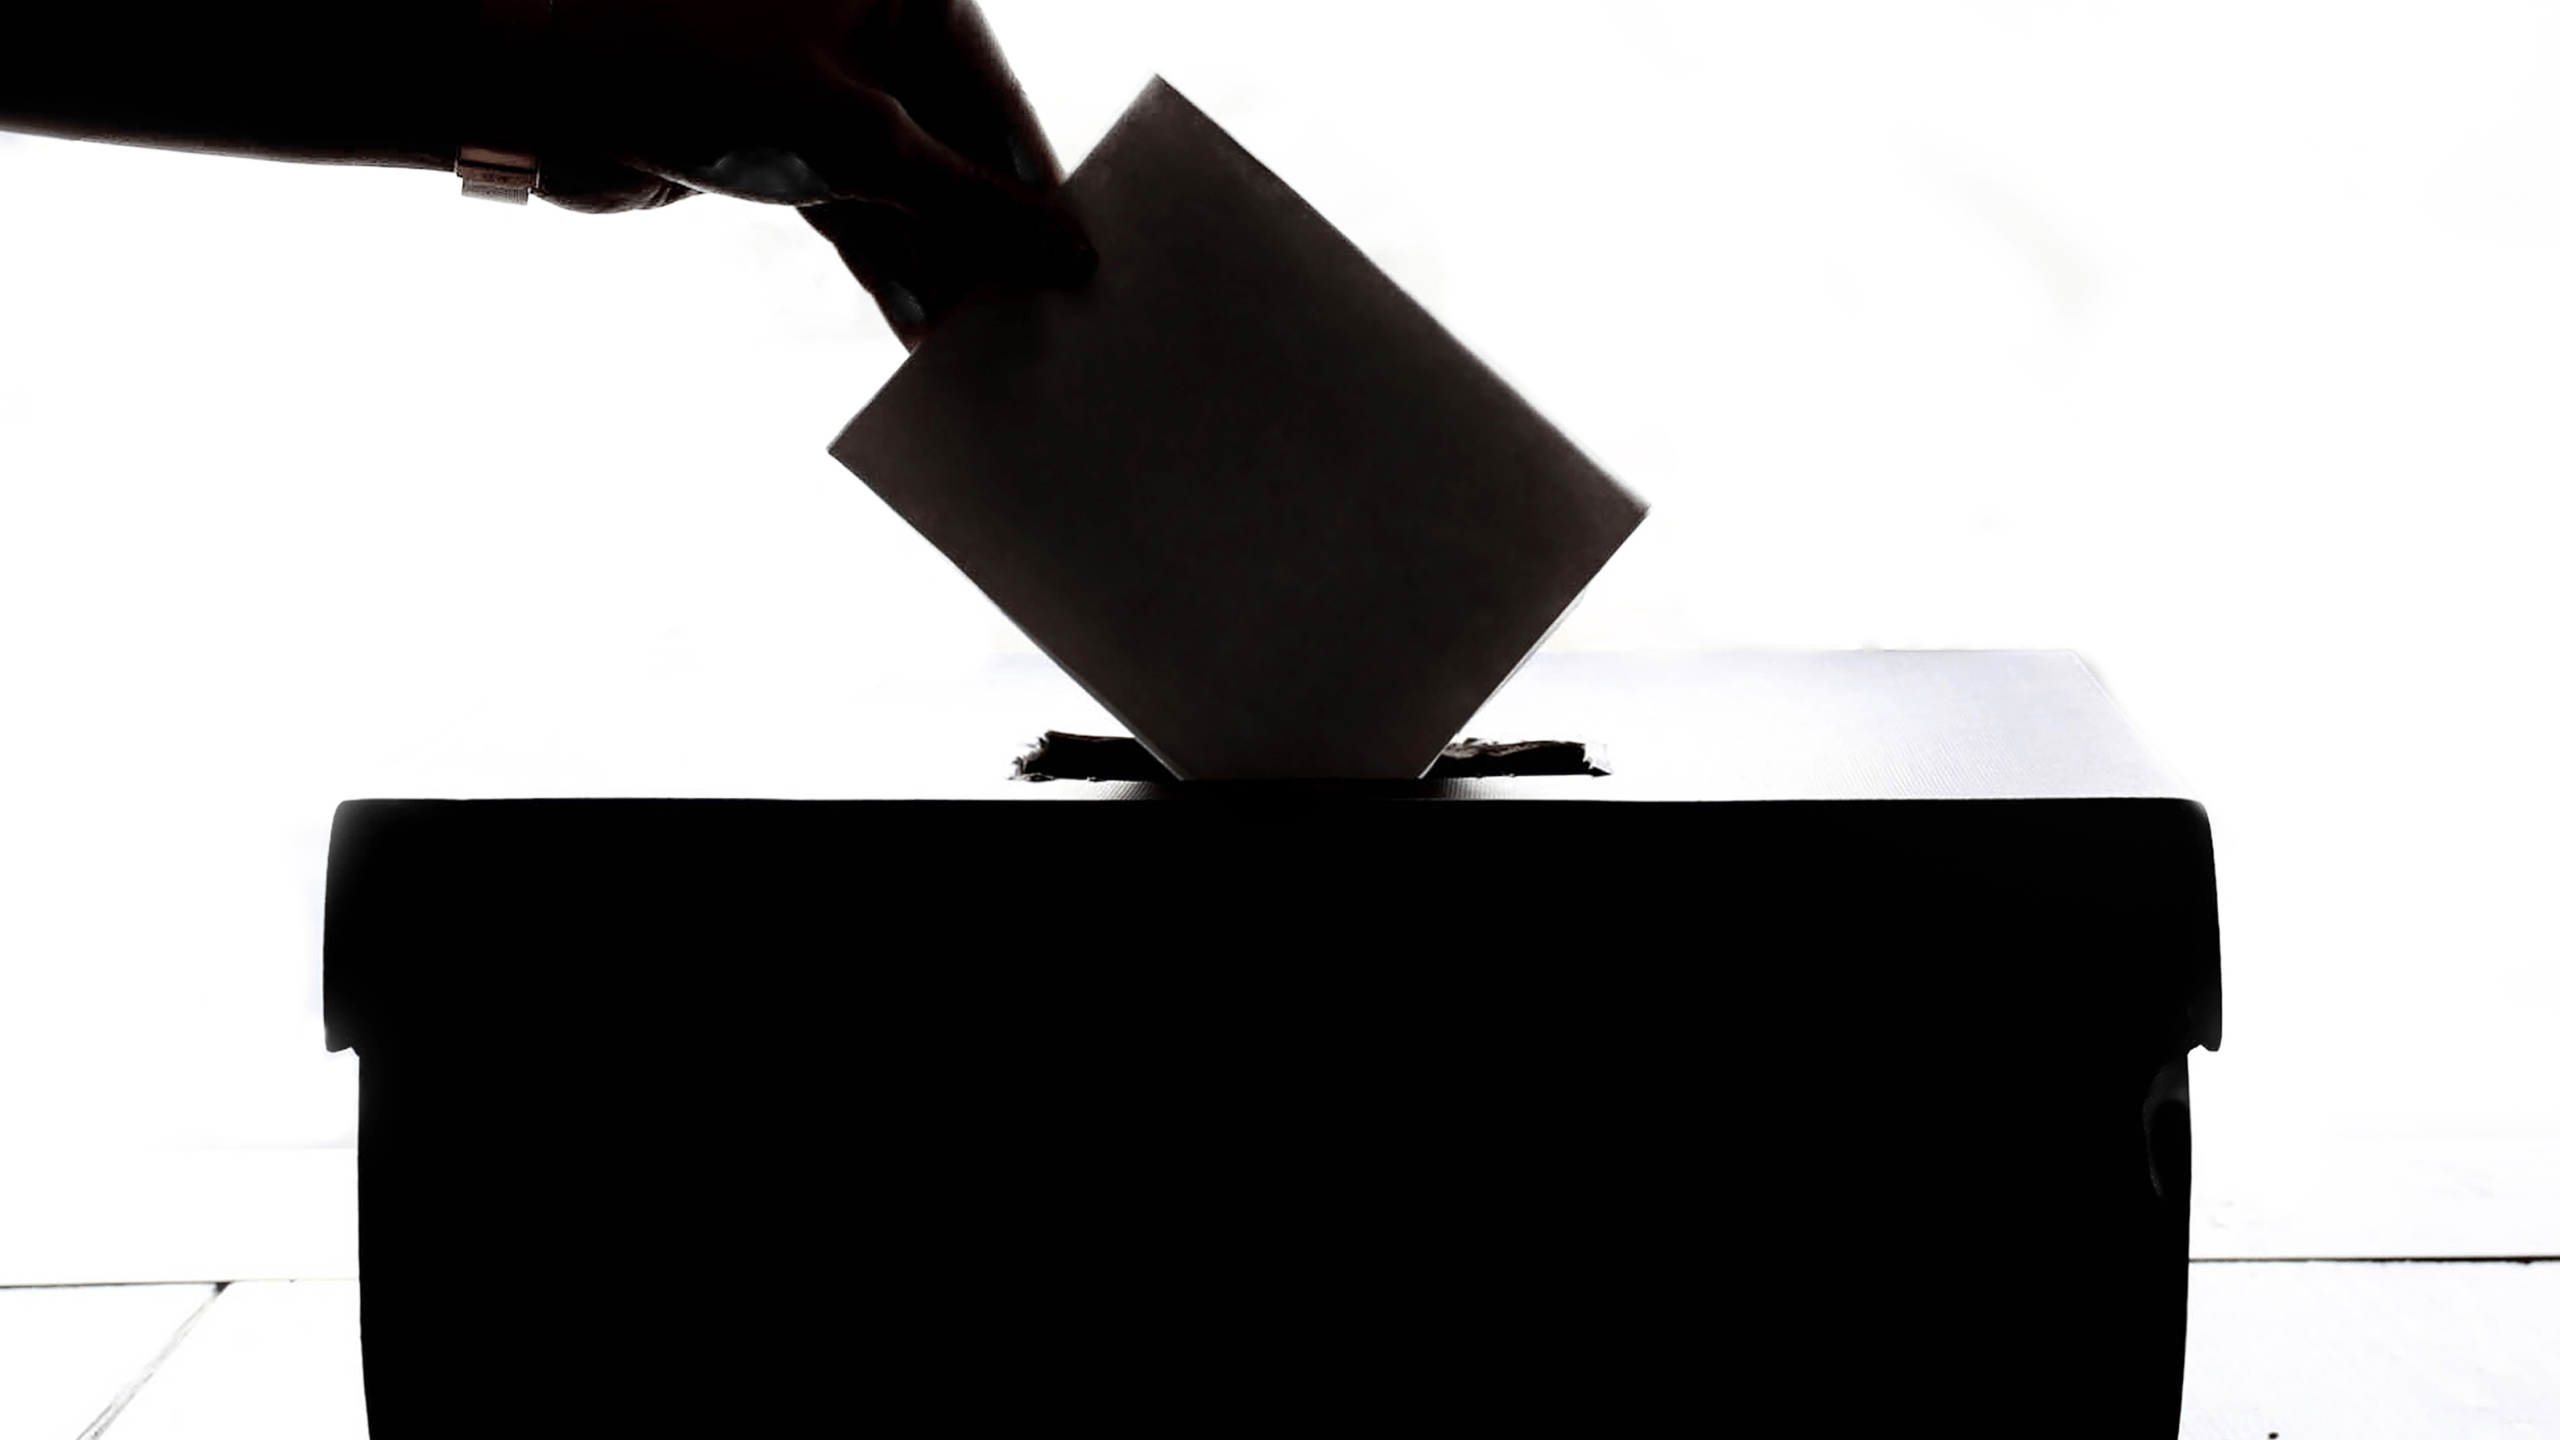 Elezioni amministrative, 49 i comuni abruzzesi in cui si vota domenica 12 giugno